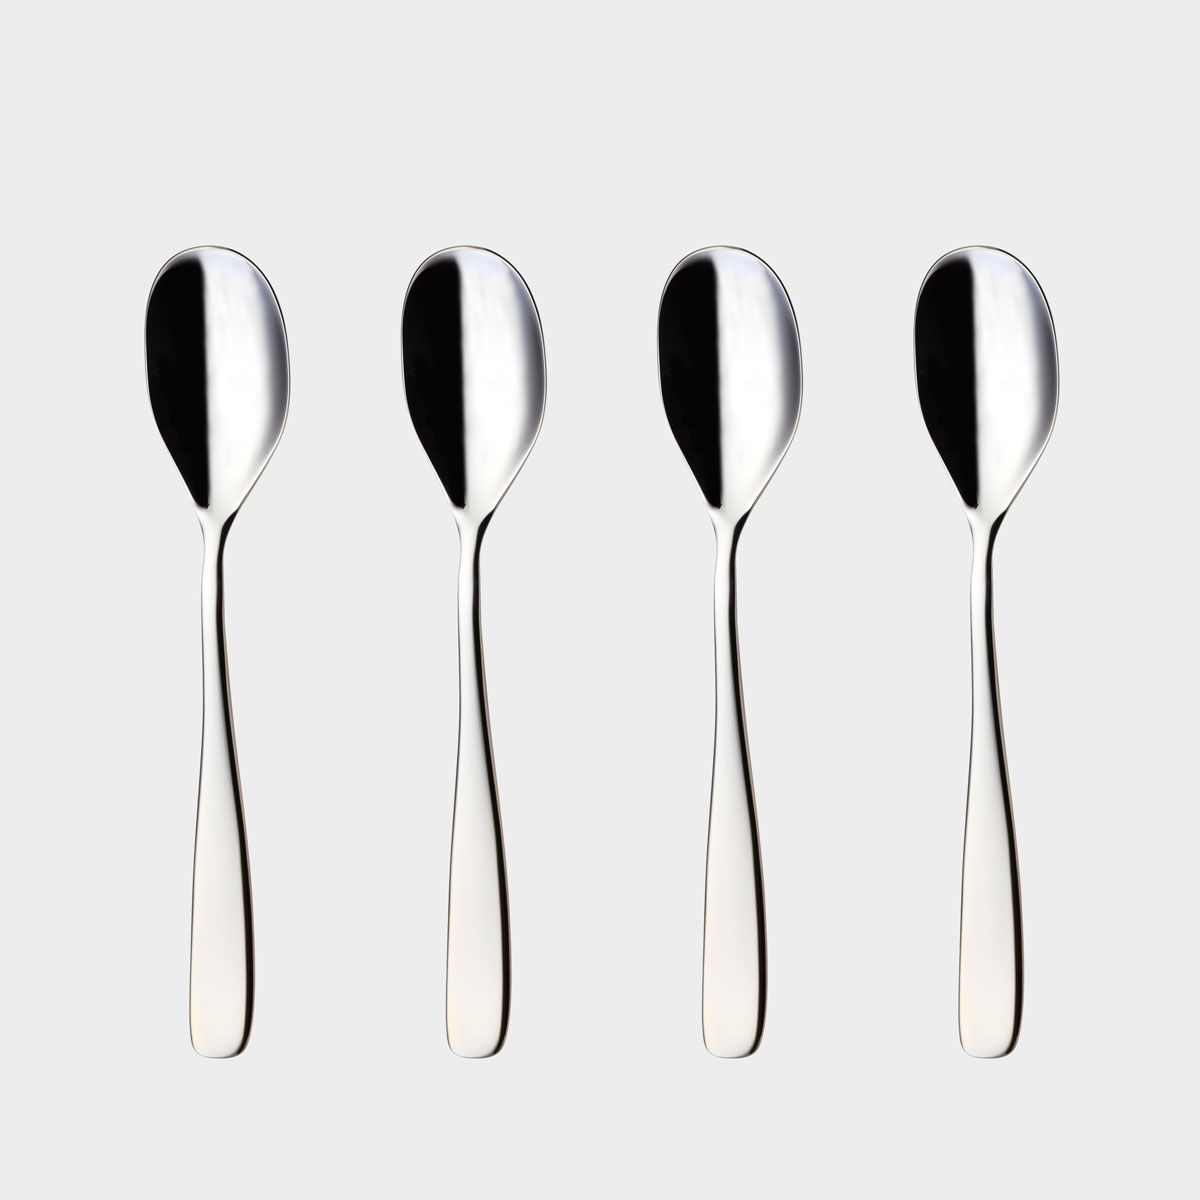 Tuva tea spoons product image